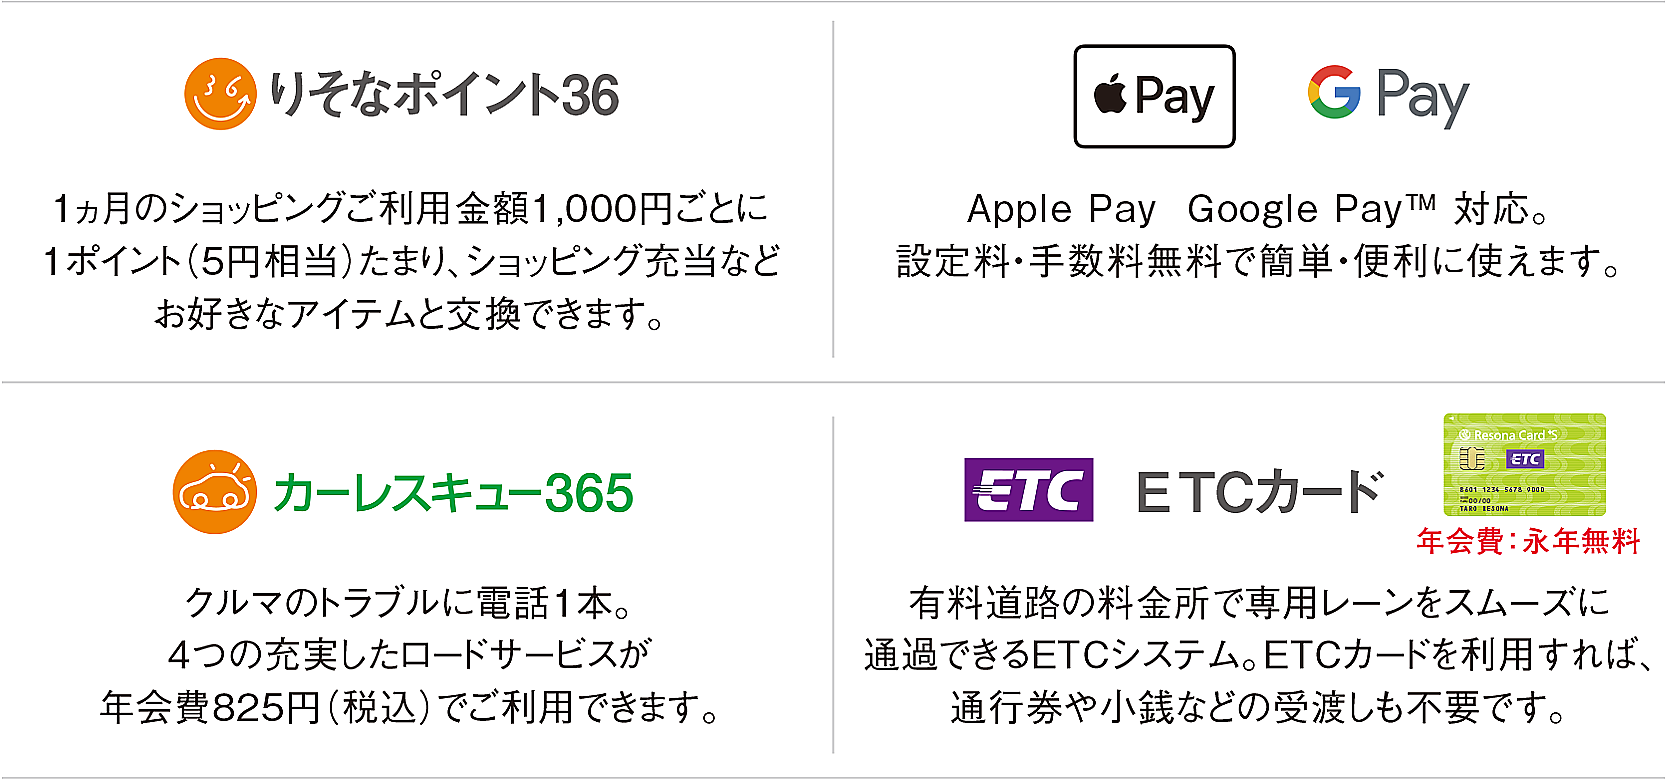 「りそなポイント36」「Apple Pay Google Pay」「カーレスキュー365」「ETCカード」